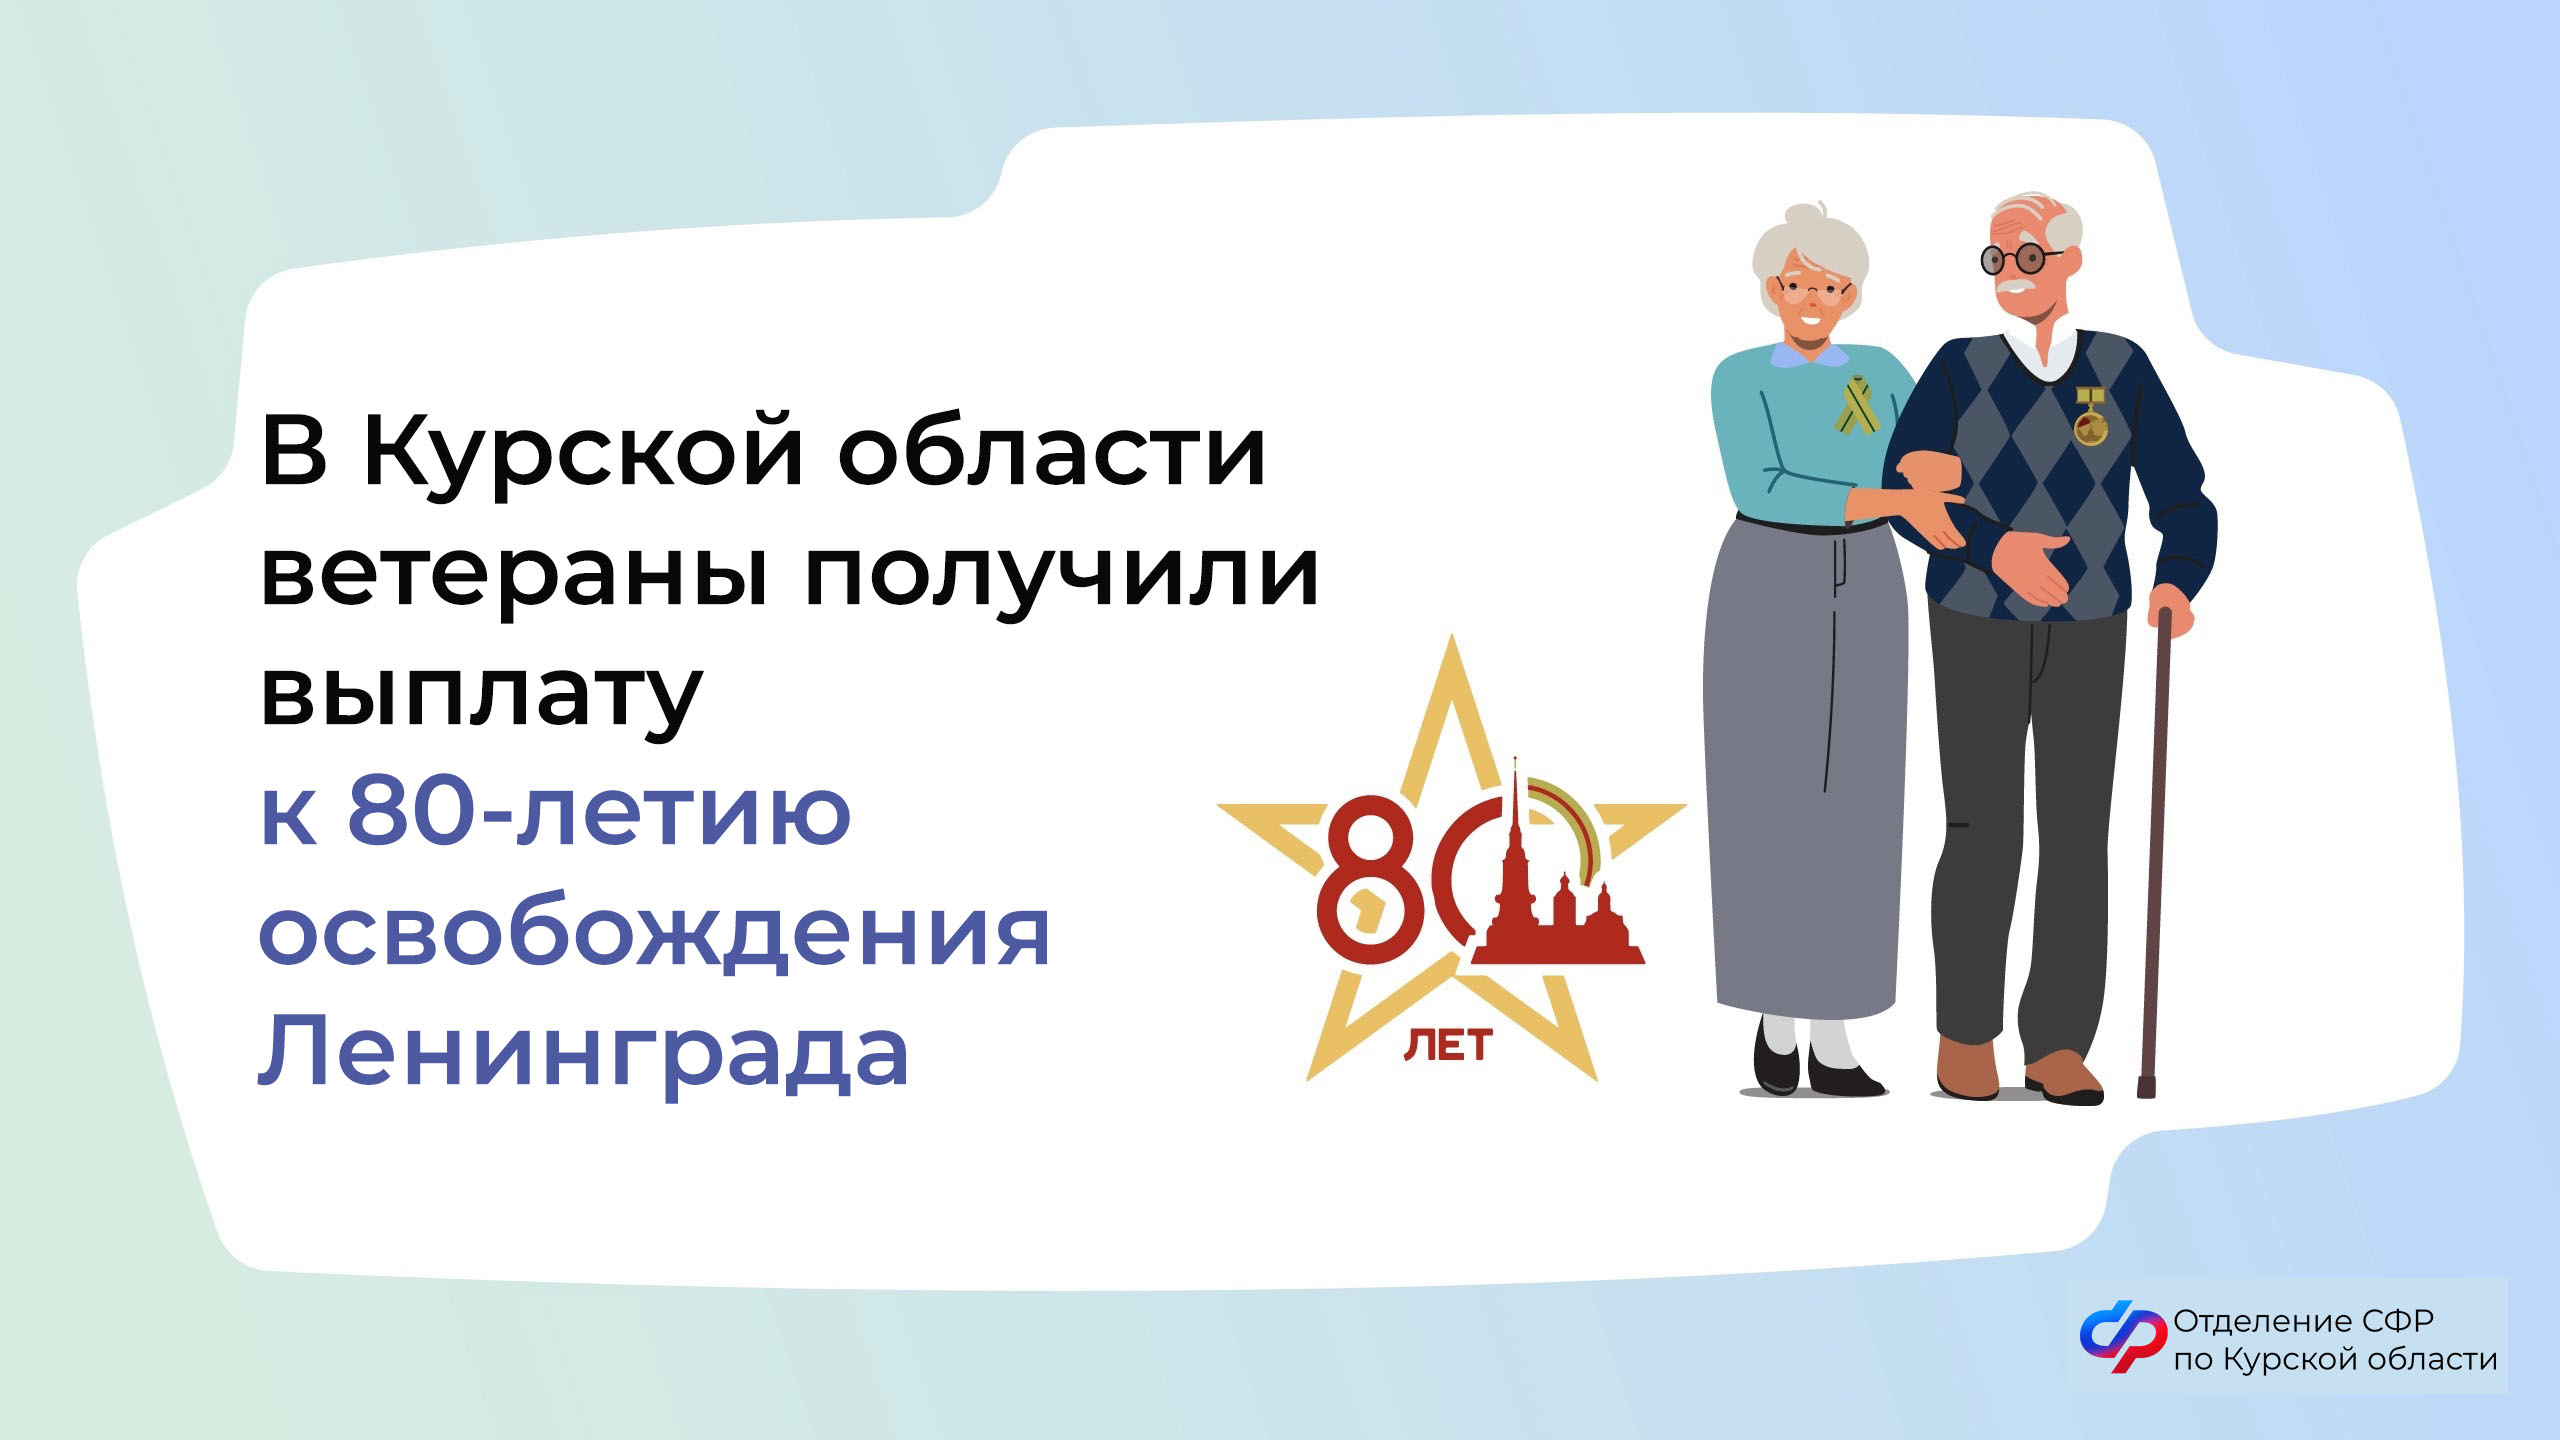 В Курской области ветераны получили выплату к 80-летию освобождения Ленинграда.